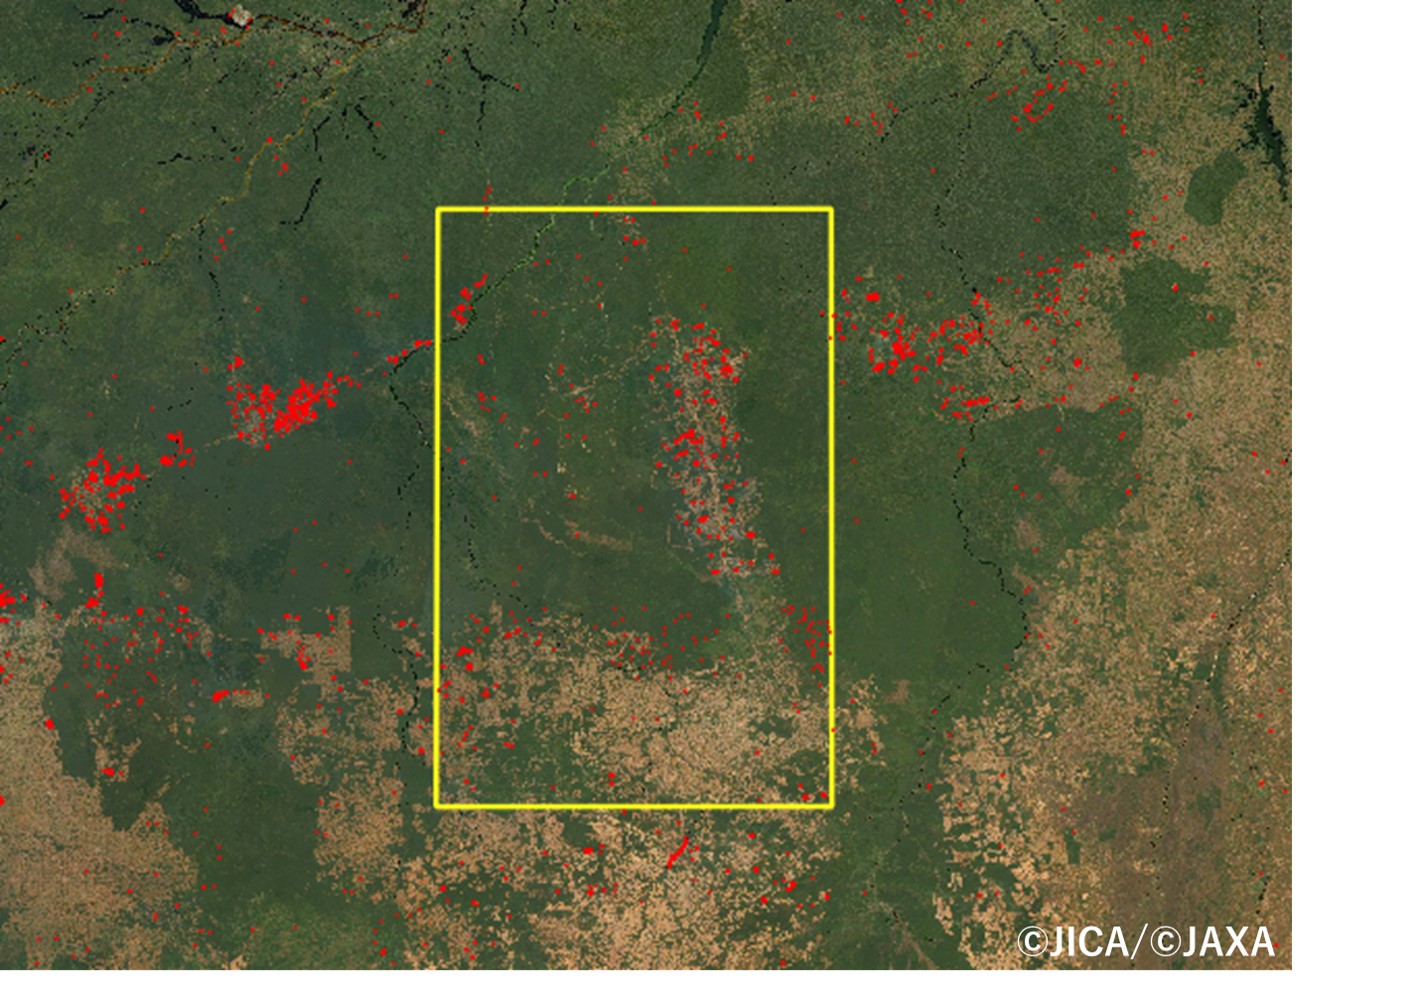 図3-2：図3-1の黄色四角付近の拡大で図2-2と概ね同じ範囲を示す（赤プロットはALOS-2による2019年8月12～25日の森林面積減少域の検出結果）